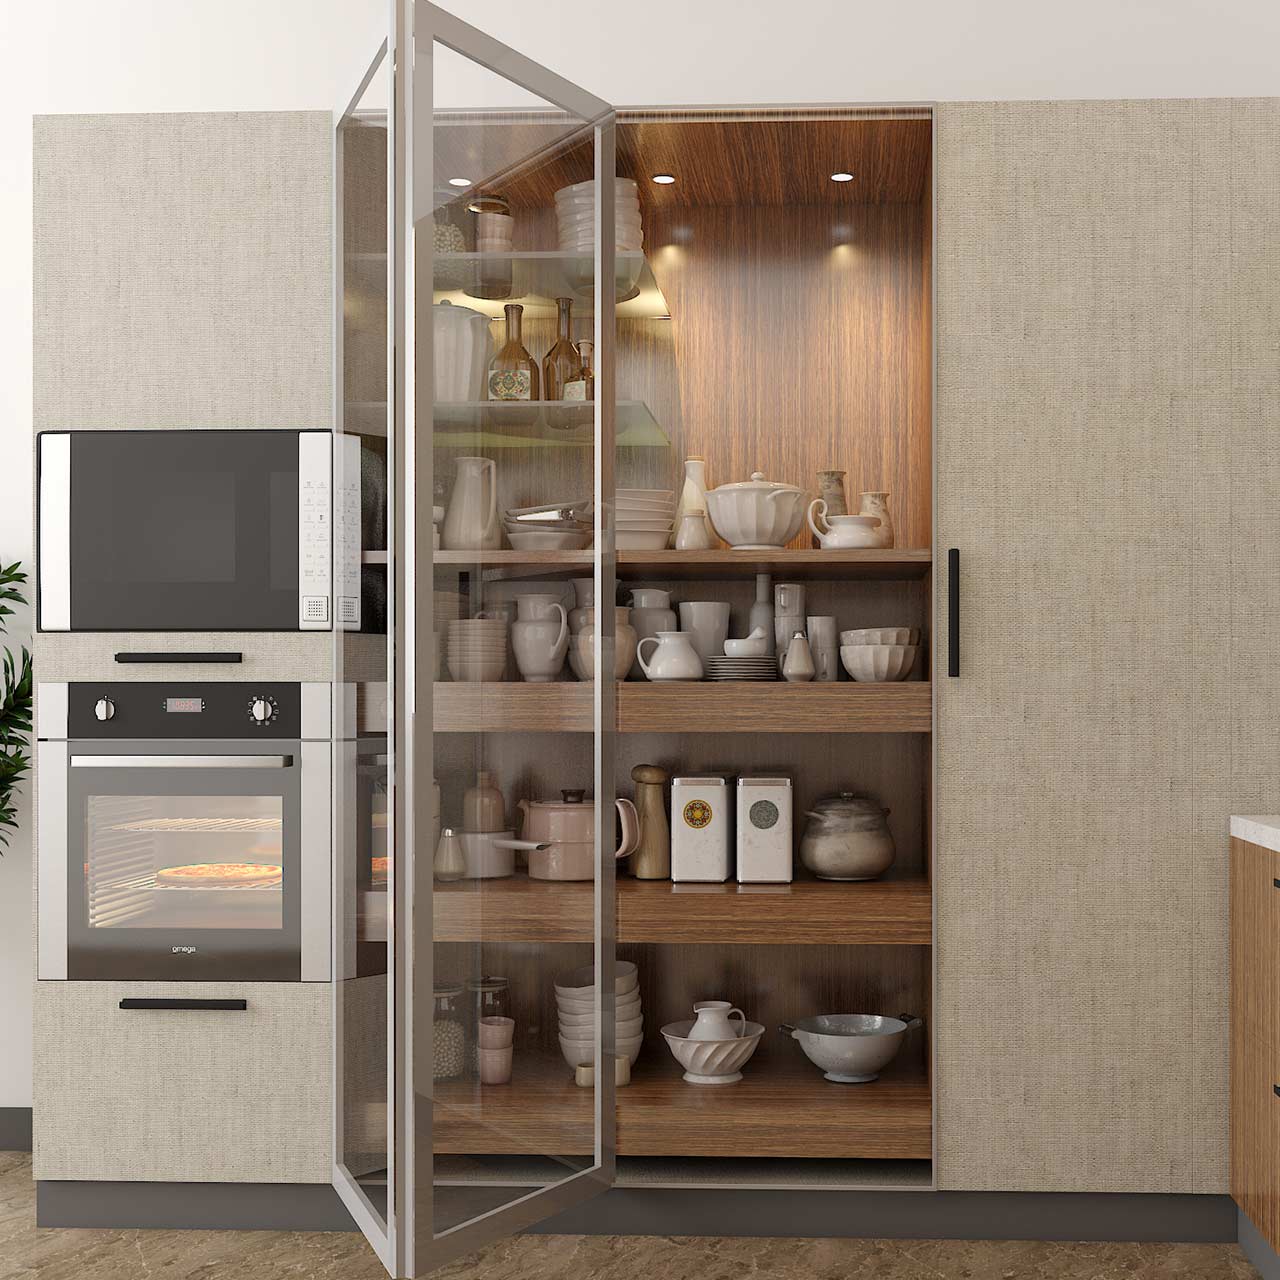 Kitchen Cupboards to enhance storage in kitchen space saving ideas